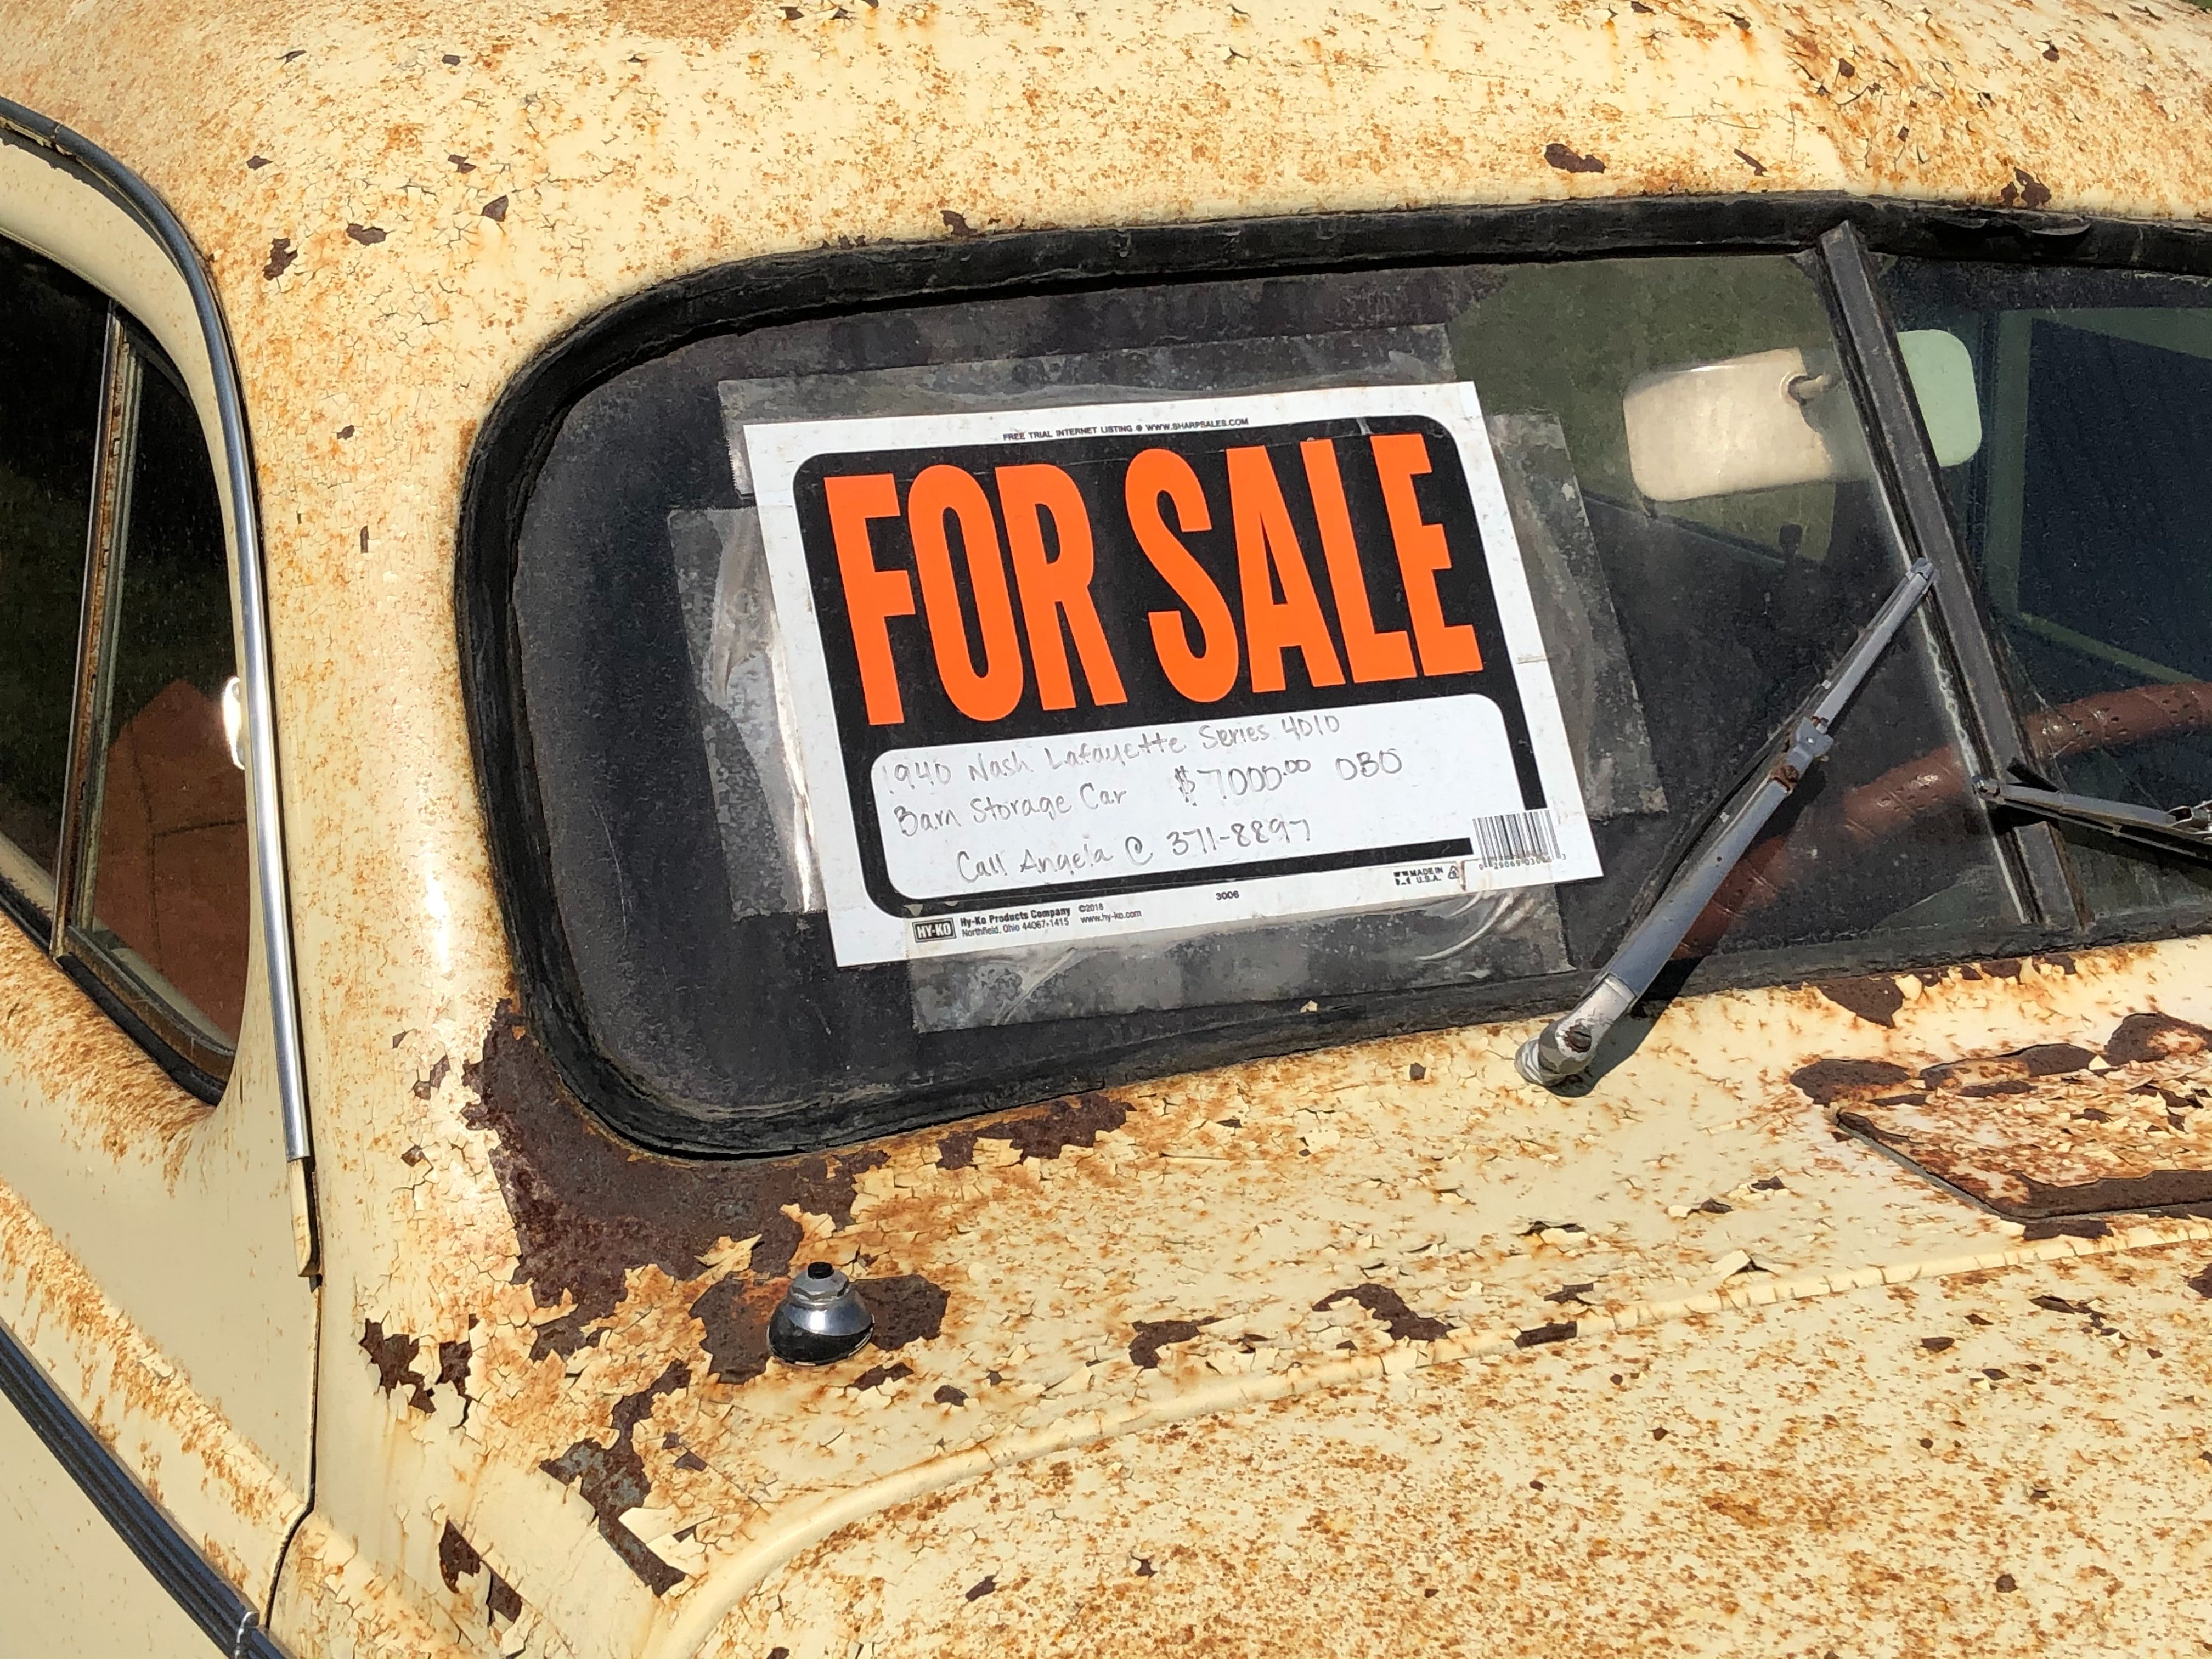 George musste sein altes Auto verkaufen, um die Rechnungen zu bezahlen. | Quelle: Unsplash